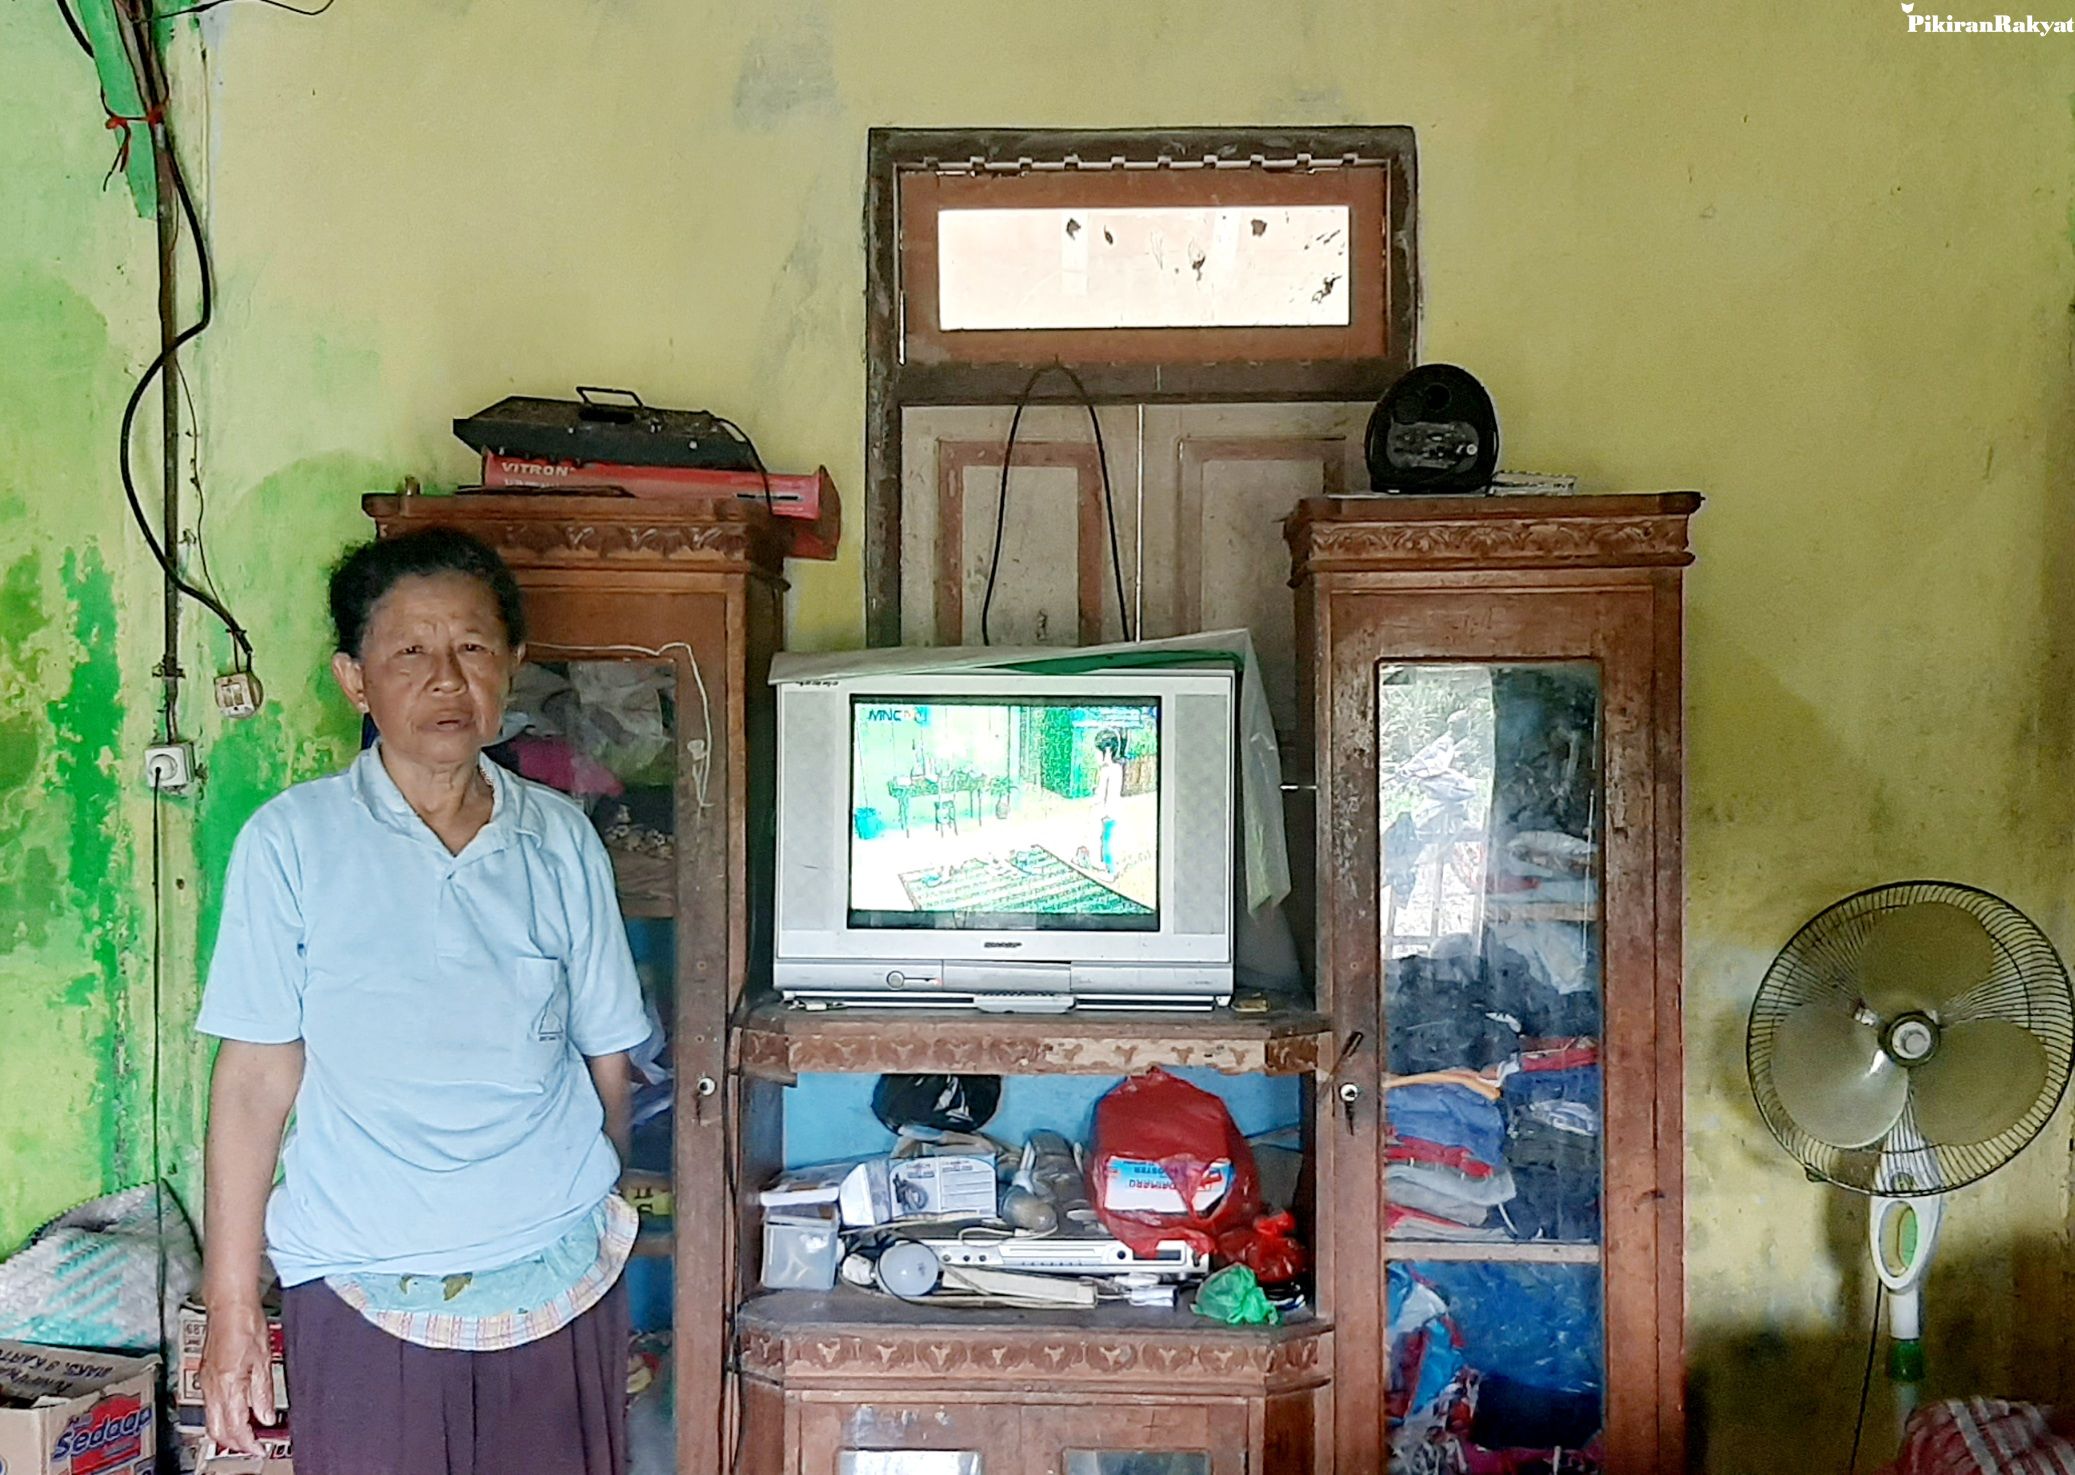 Saluran Channel RCTI, Indosiar, SCTV, DLL Hilang, Ini Solusi Munculkan Kembali Siaran TV Digital Mudah